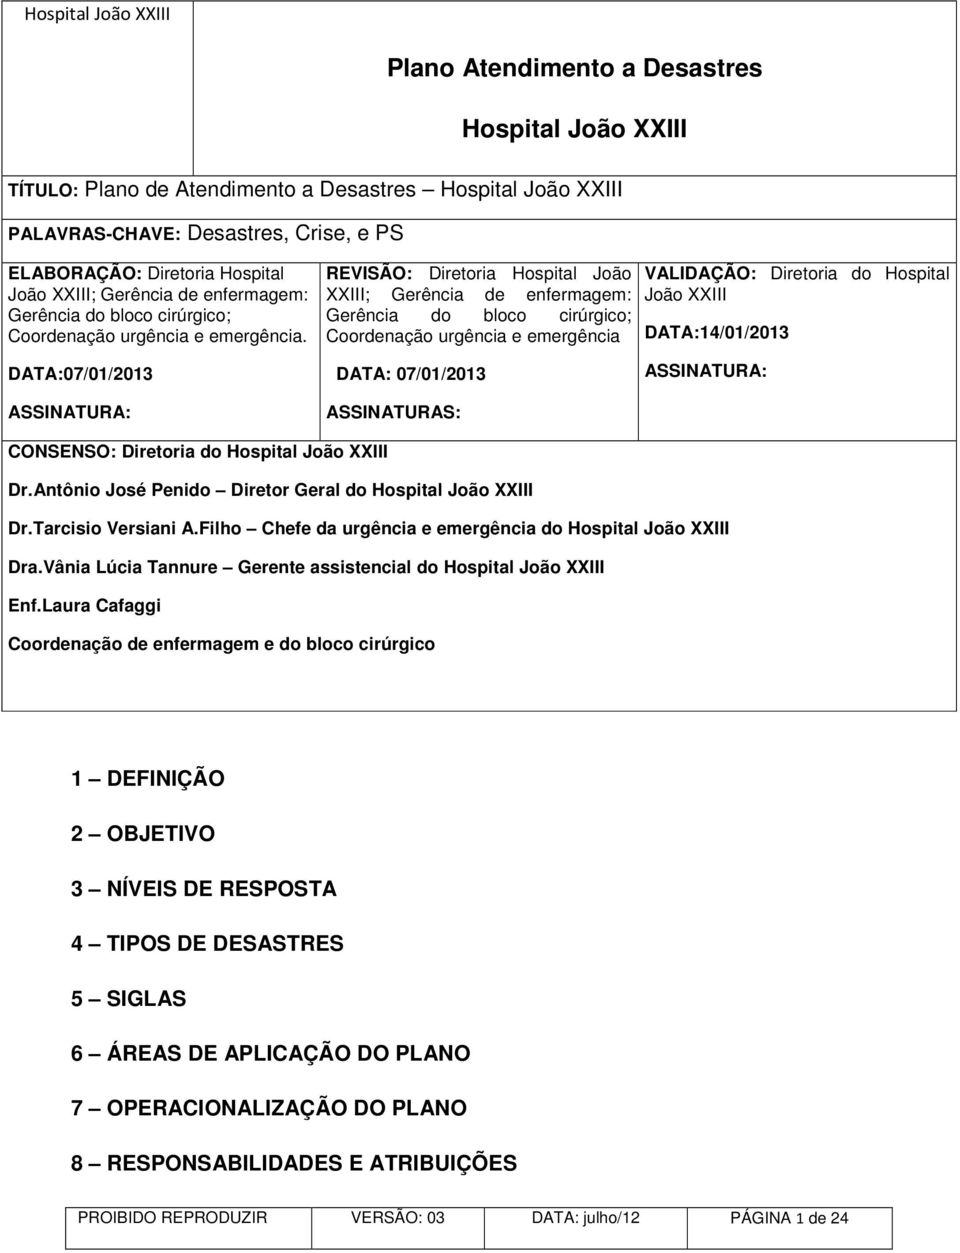 REVISÃO: Diretoria Hospital João XXIII; Gerência de enfermagem: Gerência do bloco cirúrgico; Coordenação urgência e emergência VALIDAÇÃO: Diretoria do Hospital João XXIII DATA:14/01/2013